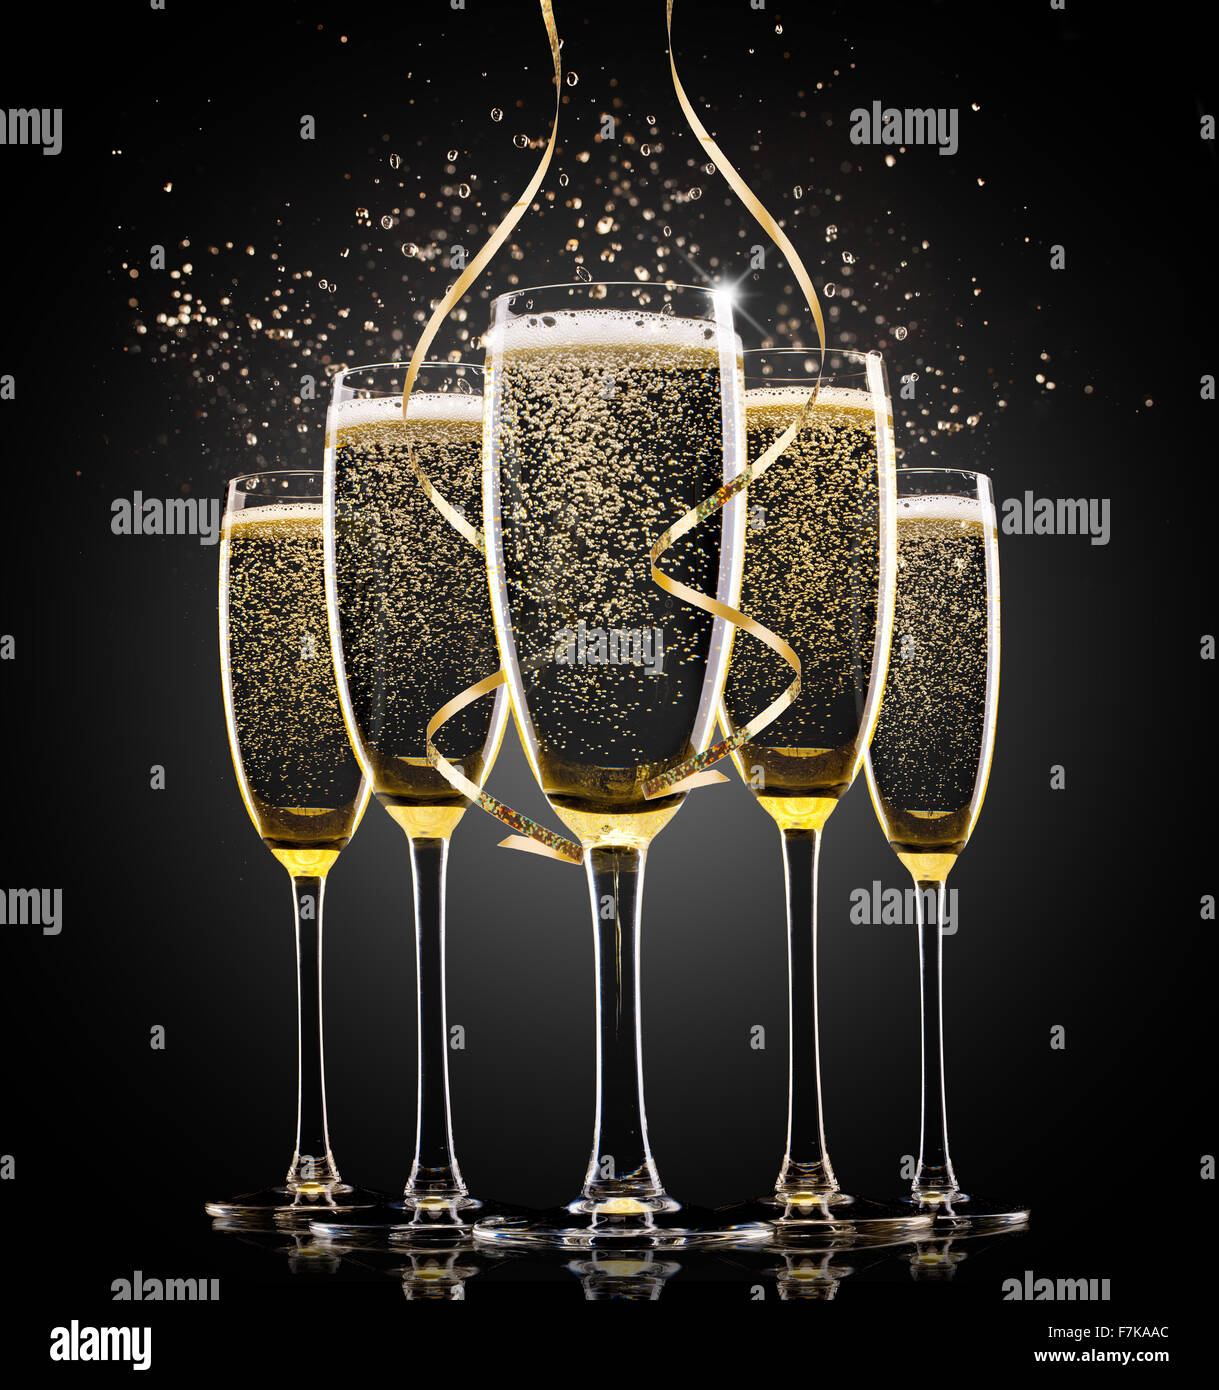 Gläser Champagner auf einem schwarzen Hintergrund. Stockfoto